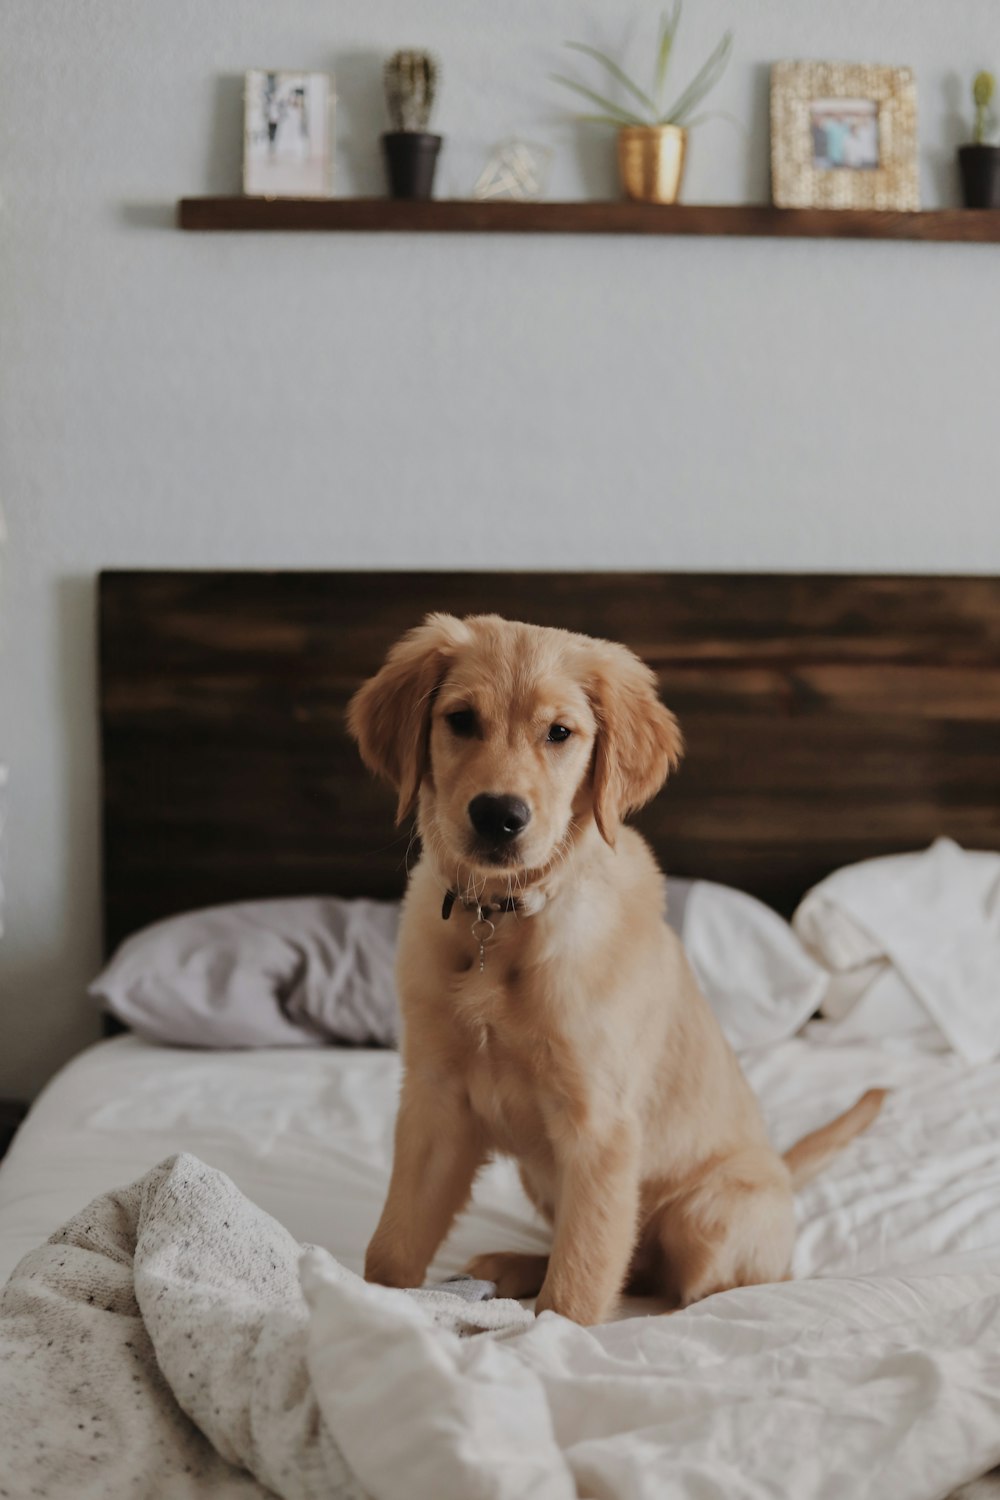 Labrador retriever on bed inside room